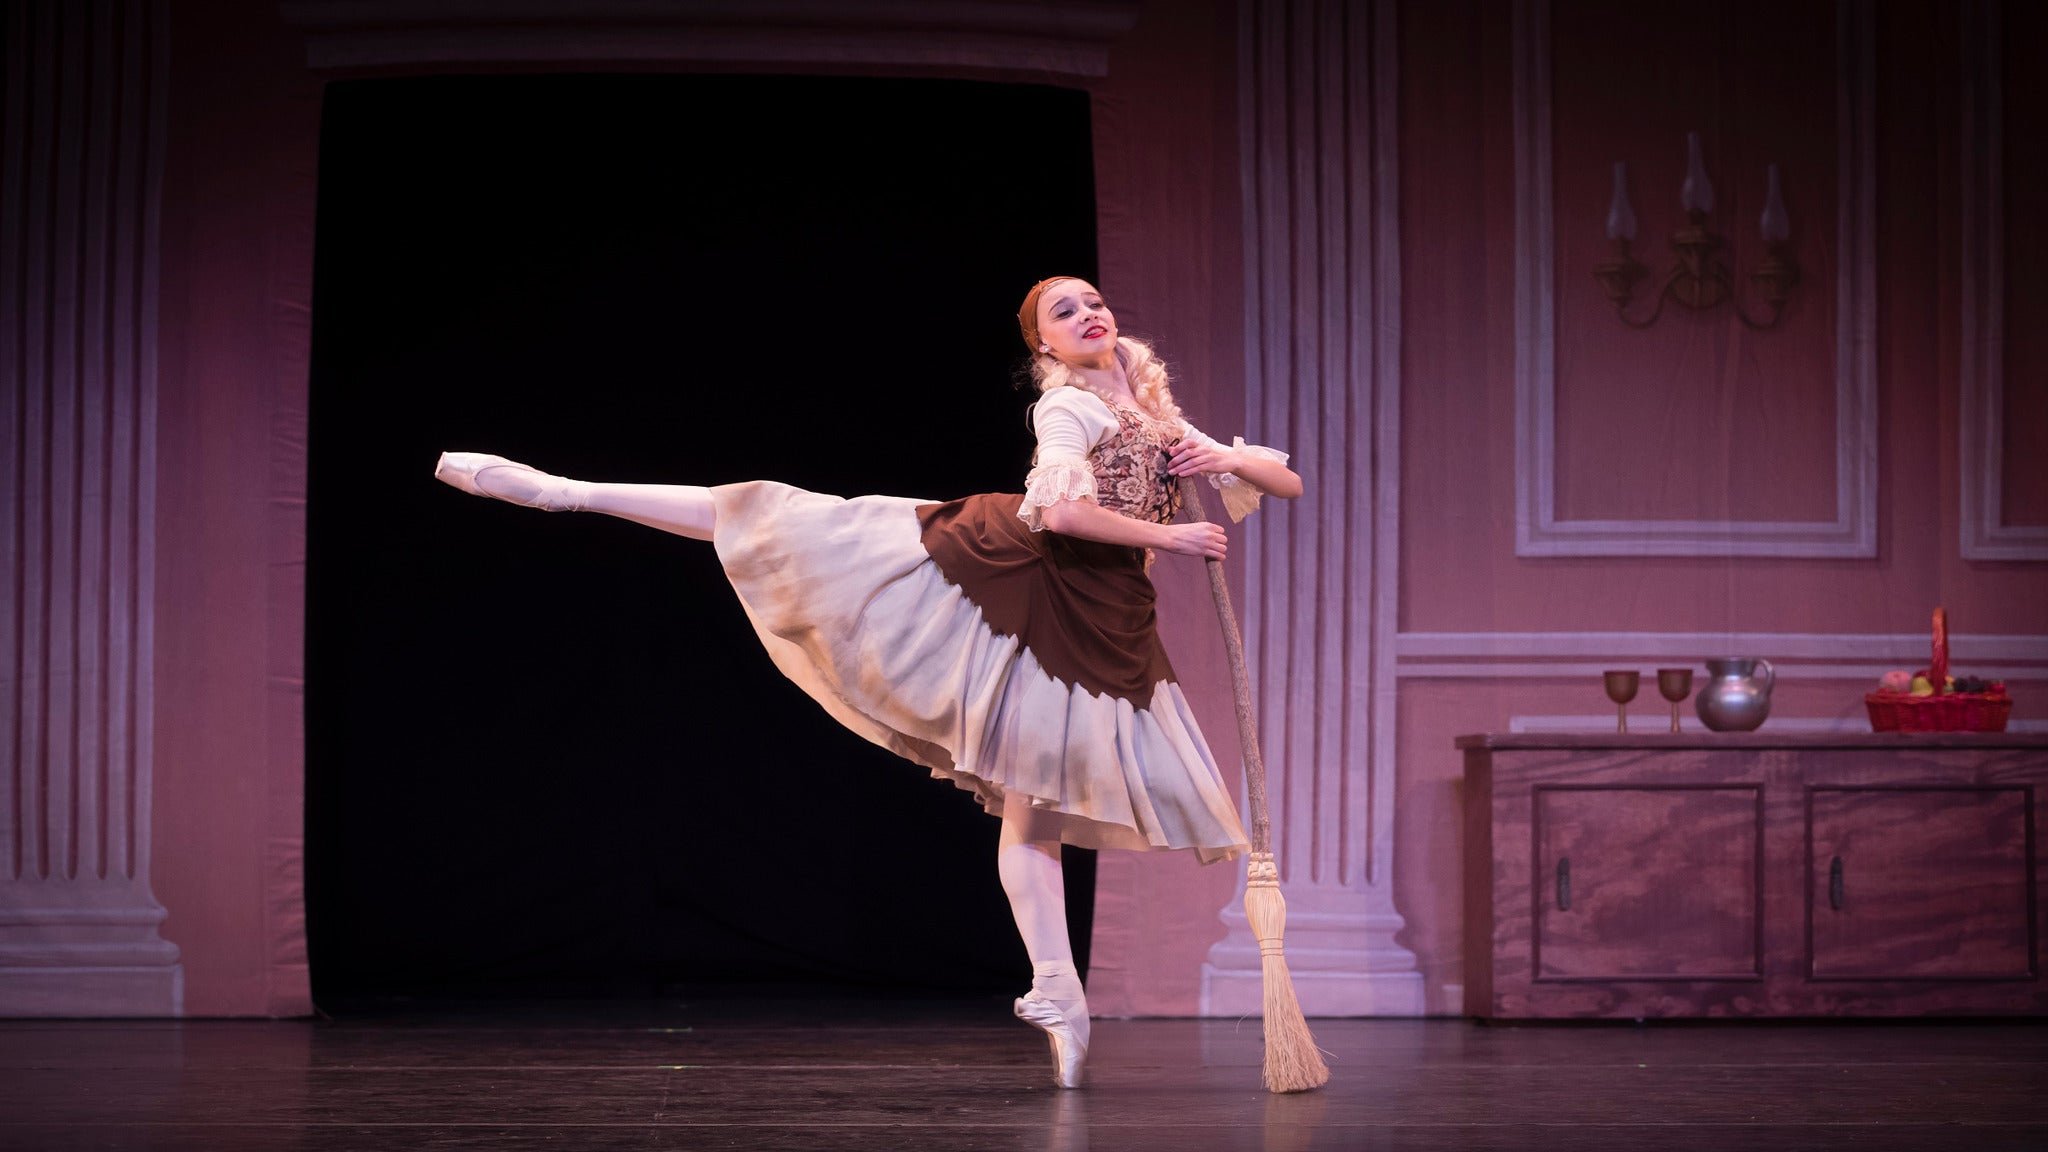 Cinderella - Presented By Ballet Etudes - Chandler, AZ 85224